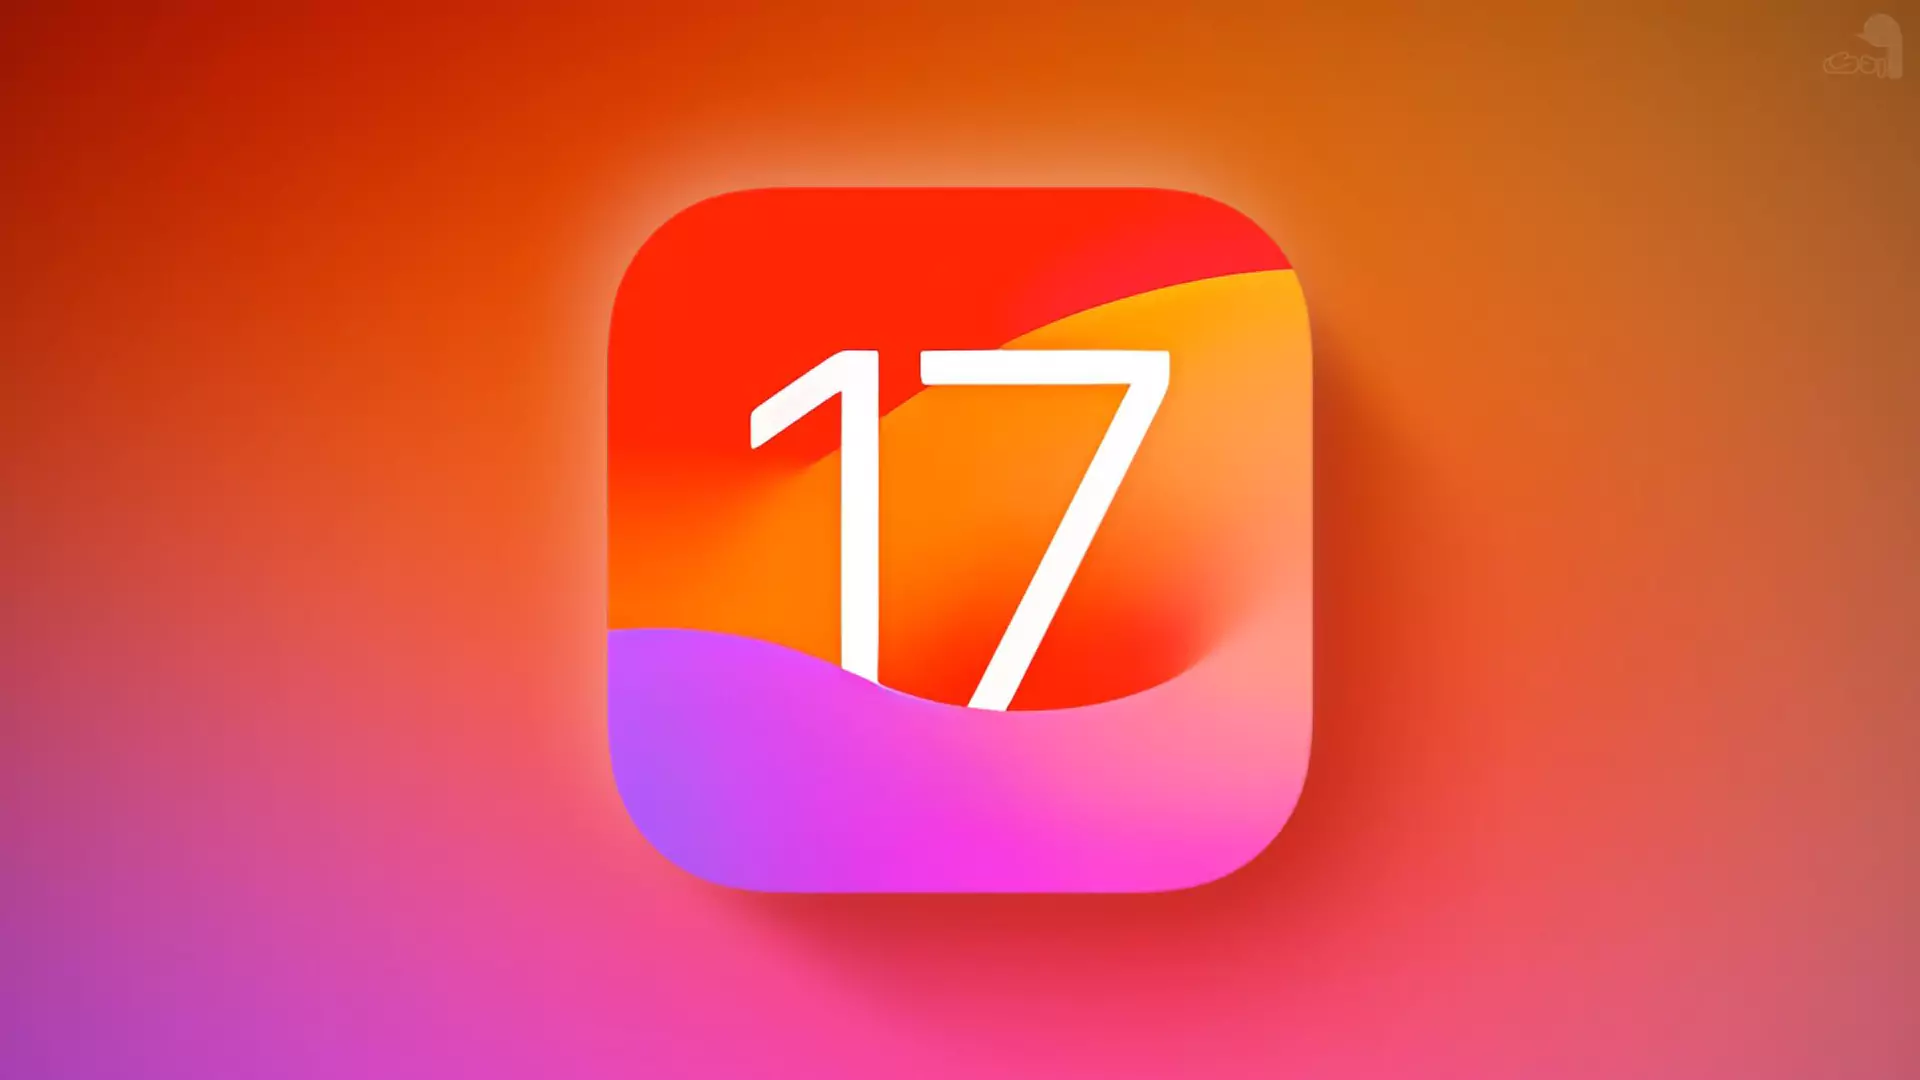 اپل تاریخ انتشار iOS 17 را اعلام کرد - اردک دیجیتال